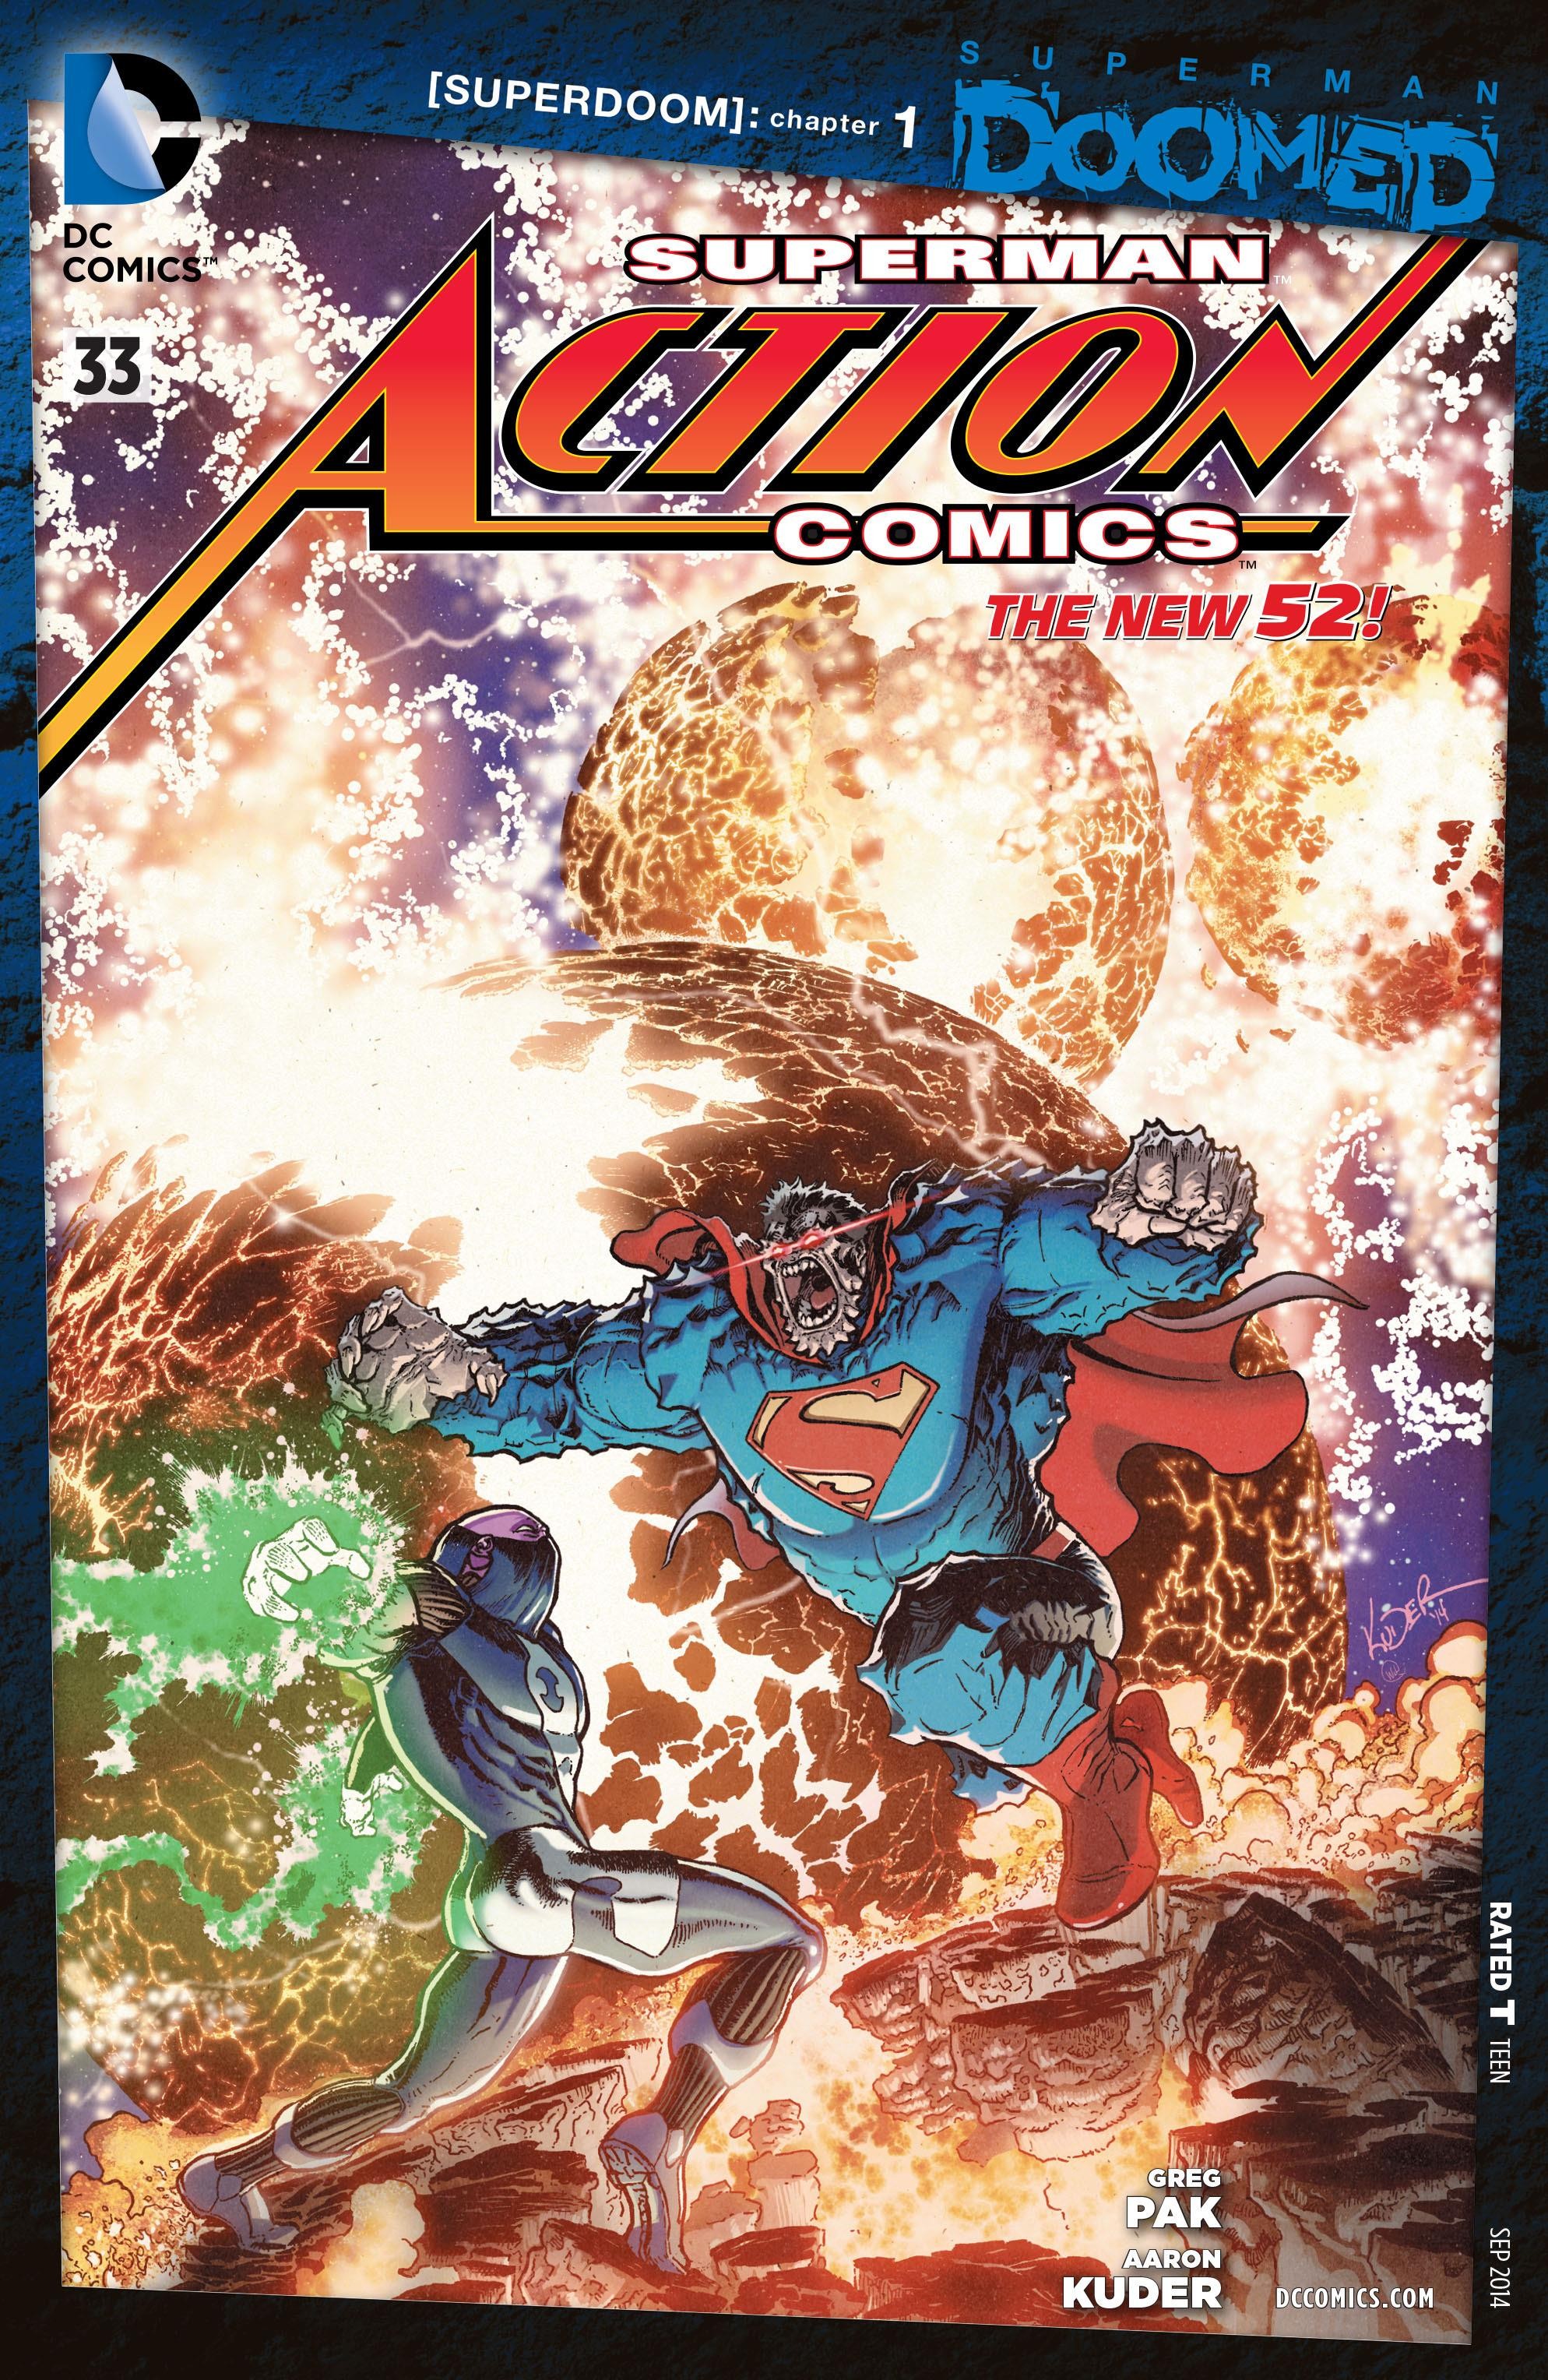 Action Comics Vol. 2 #33